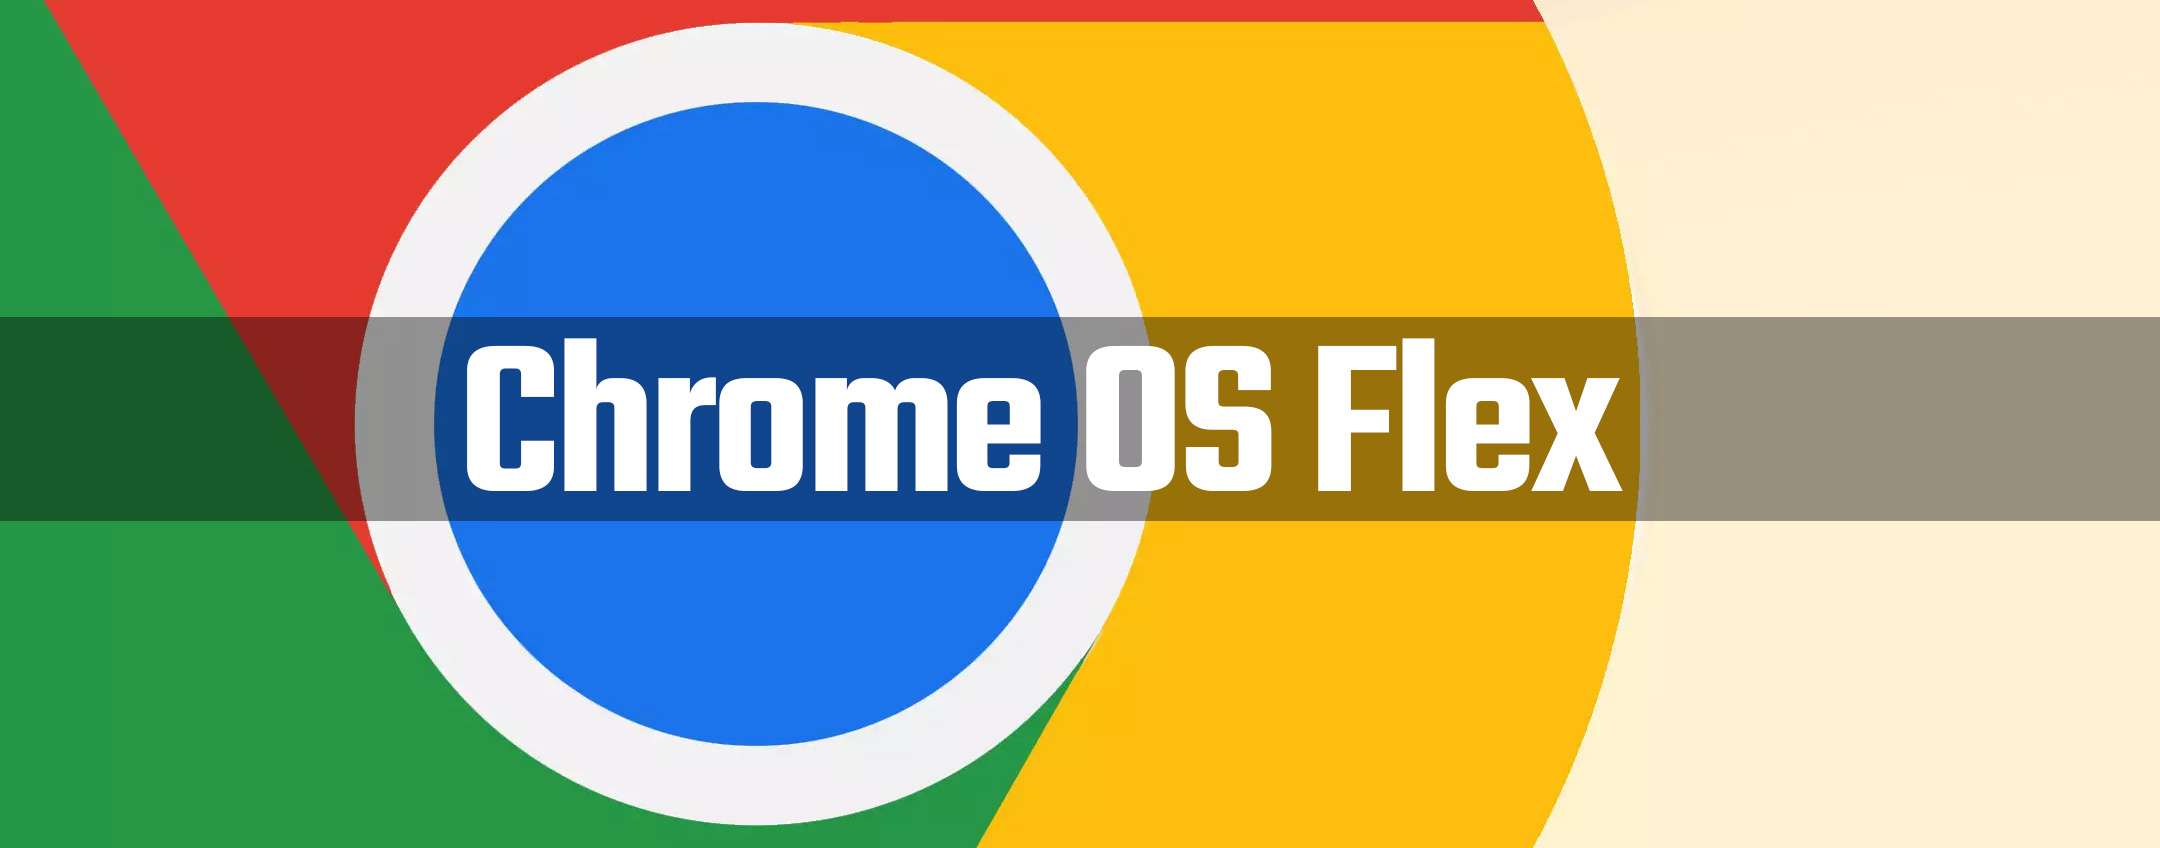 E’ arrivato Chrome OS Flex e le prospettive sono interessanti!